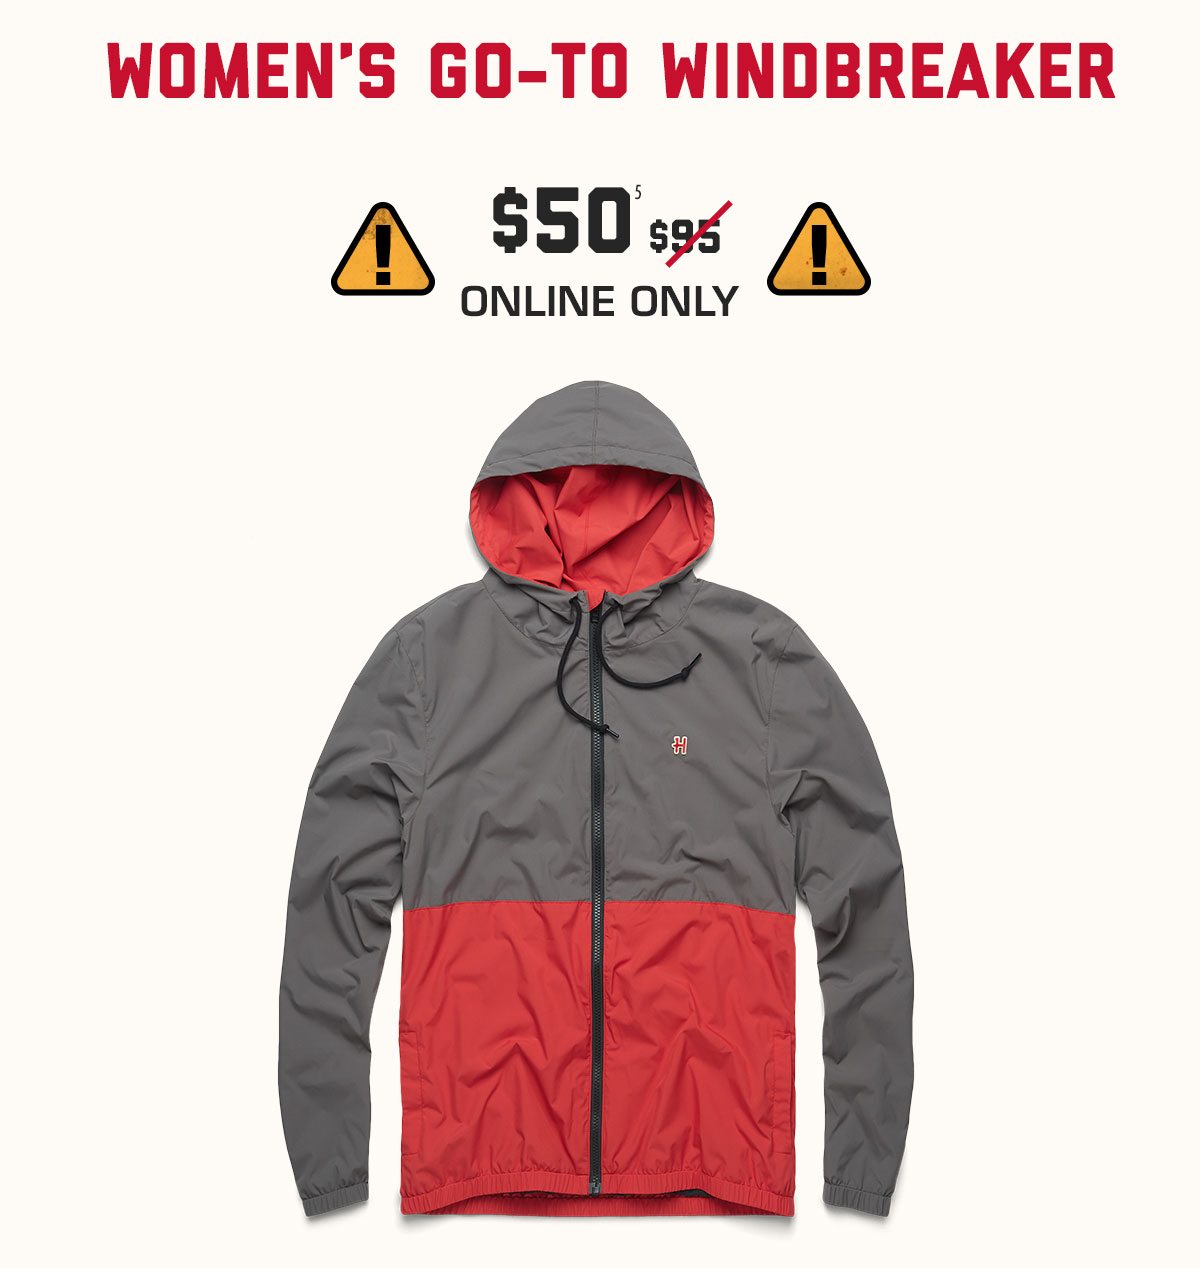 Women's Go-To Windbreaker, $50* online only.